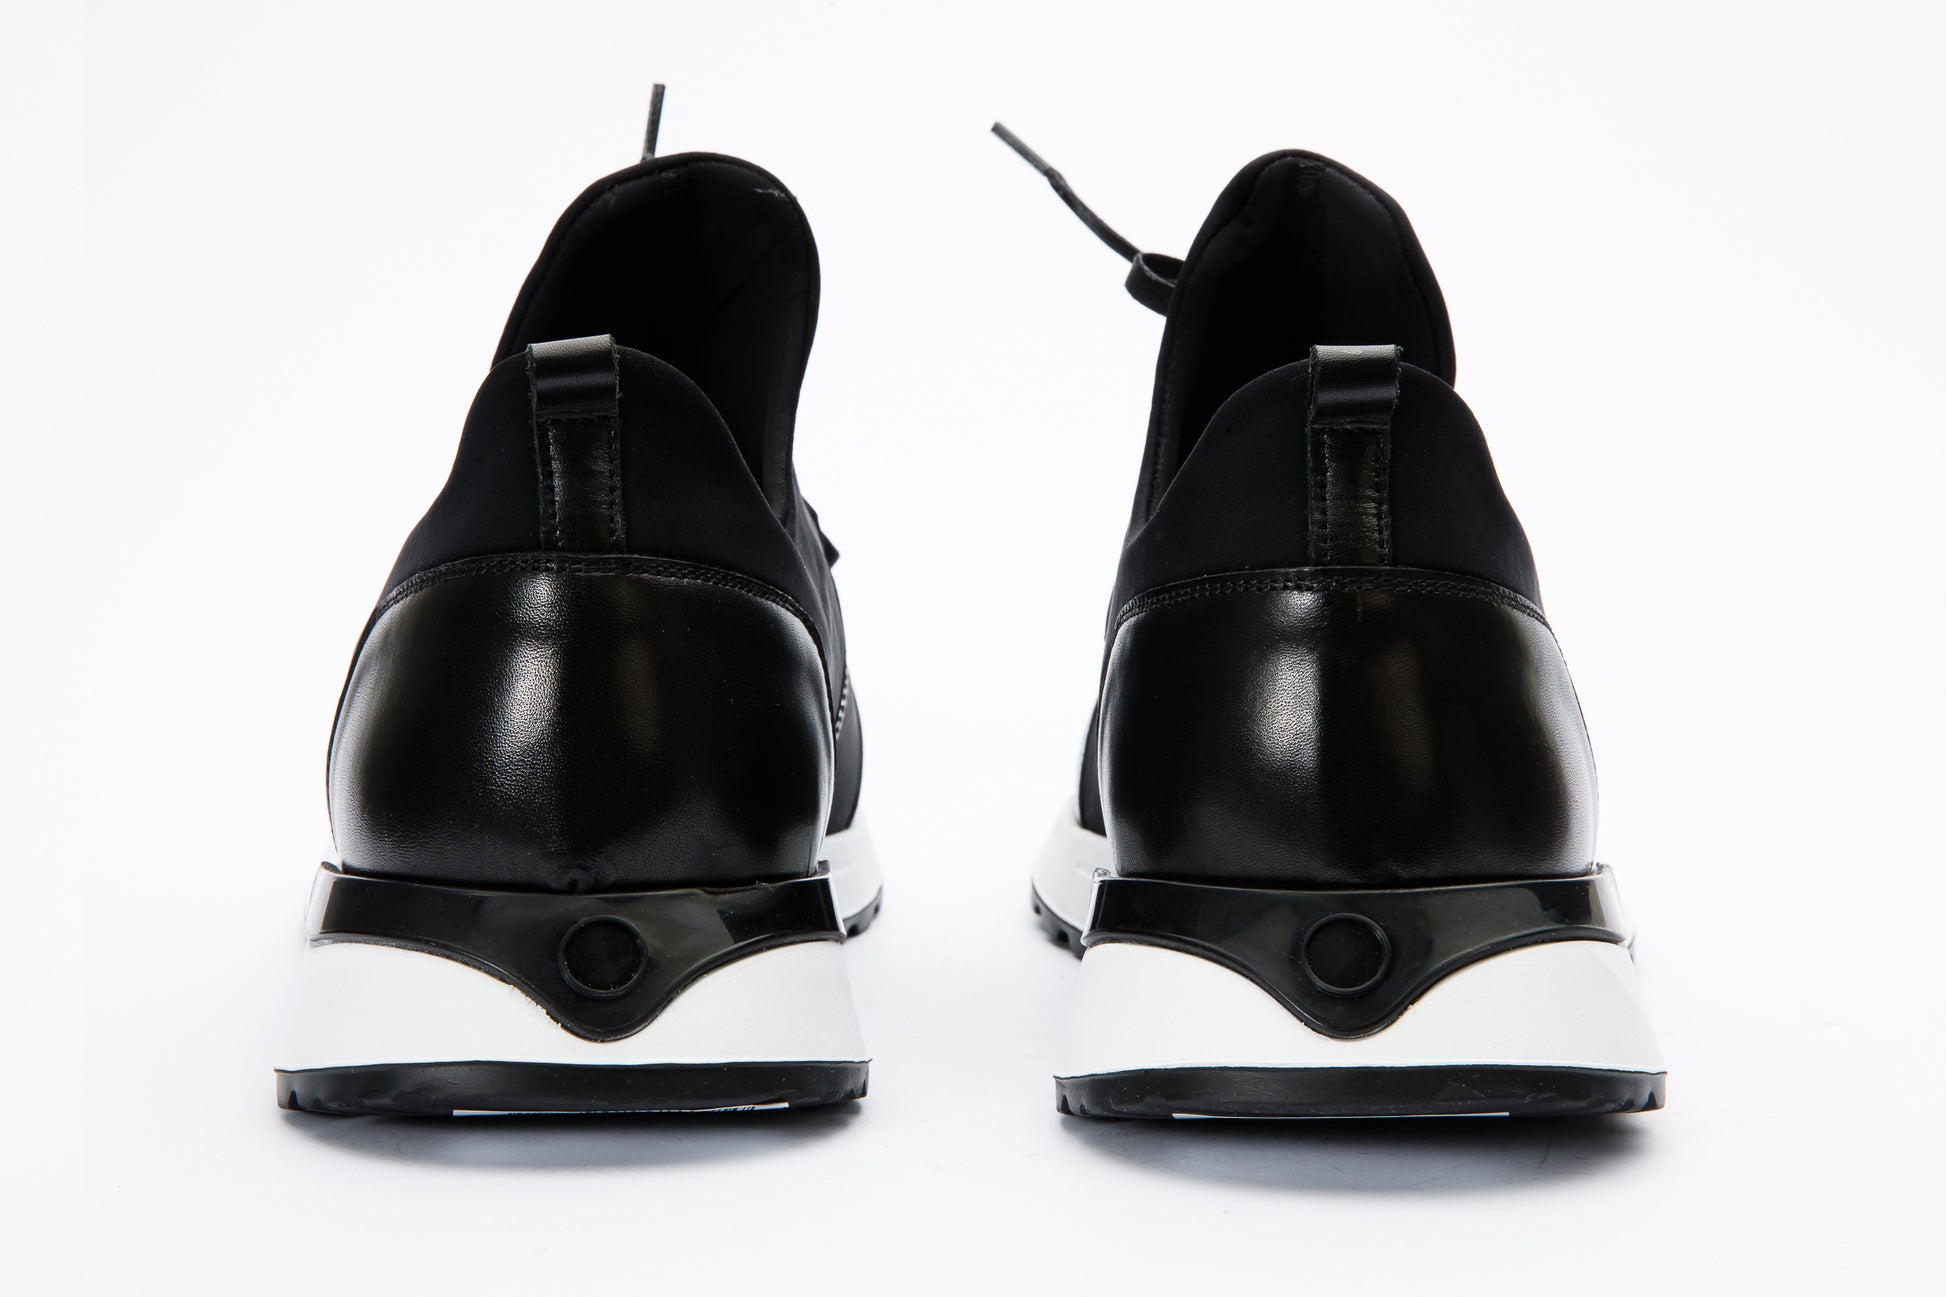 The Nebreska Black Leather Men Sneaker – Vinci Leather Shoes